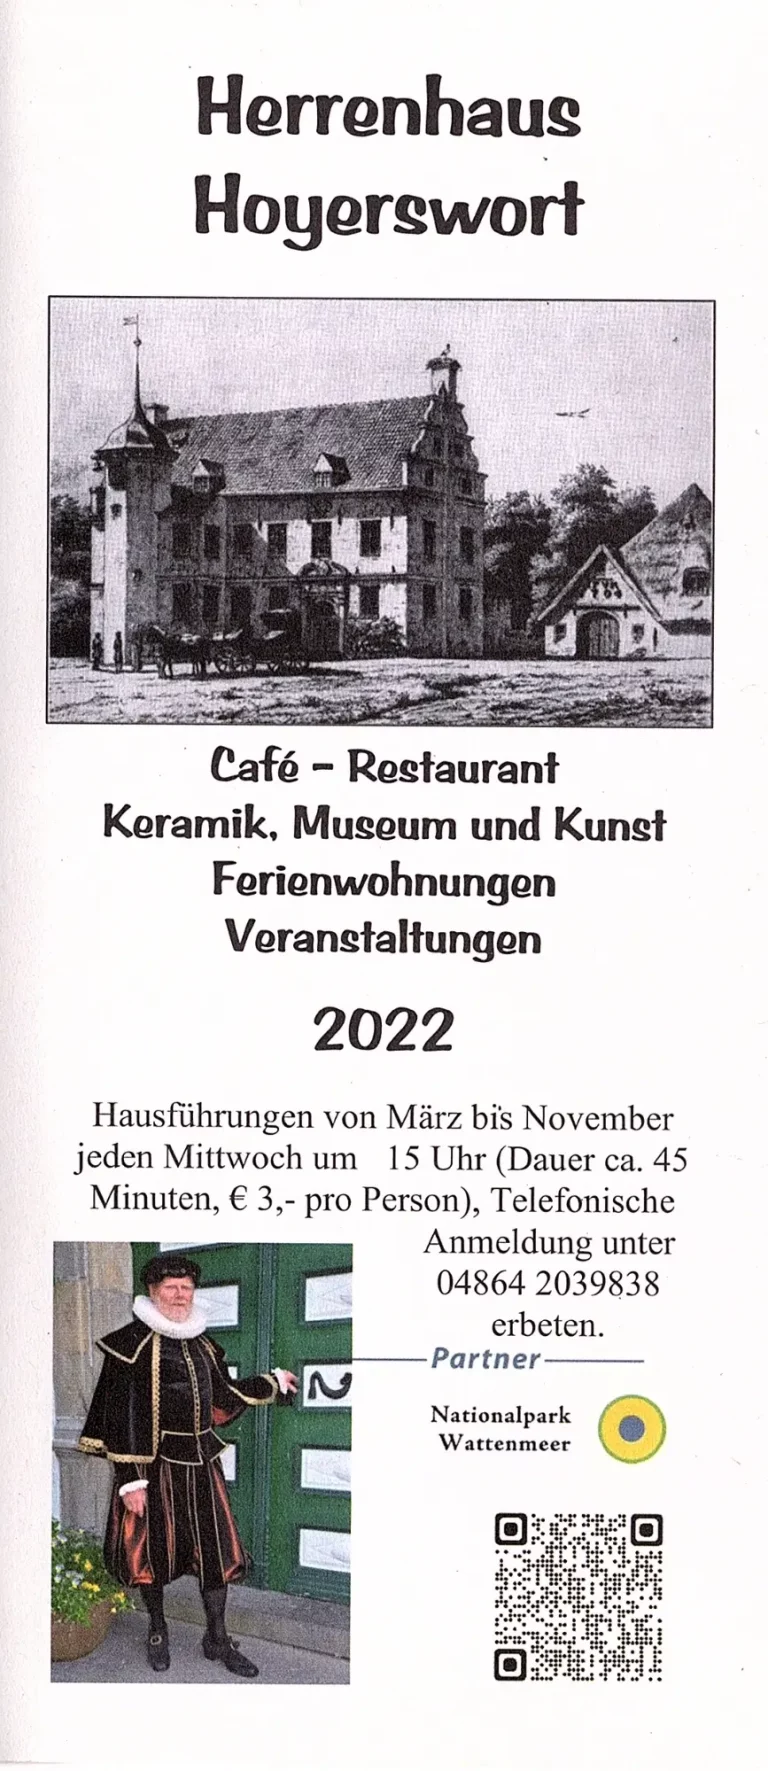 Herrenhaus Hoyerswort Oldenswort 01 768x1771